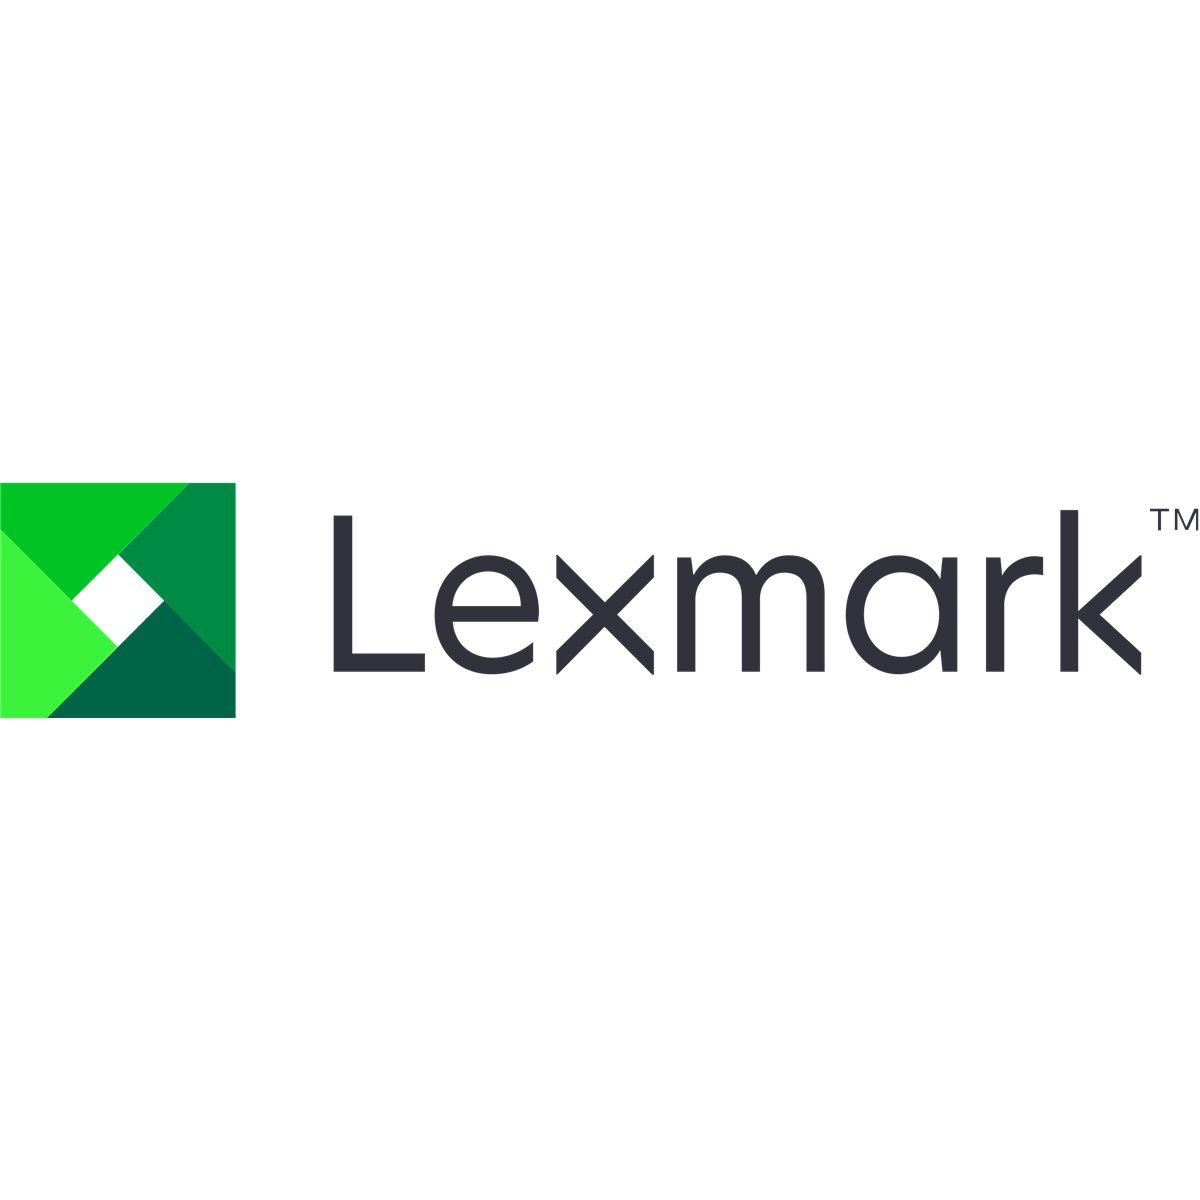 Lexmark MS81x SVC Other Mechanical Ha SFP Staple